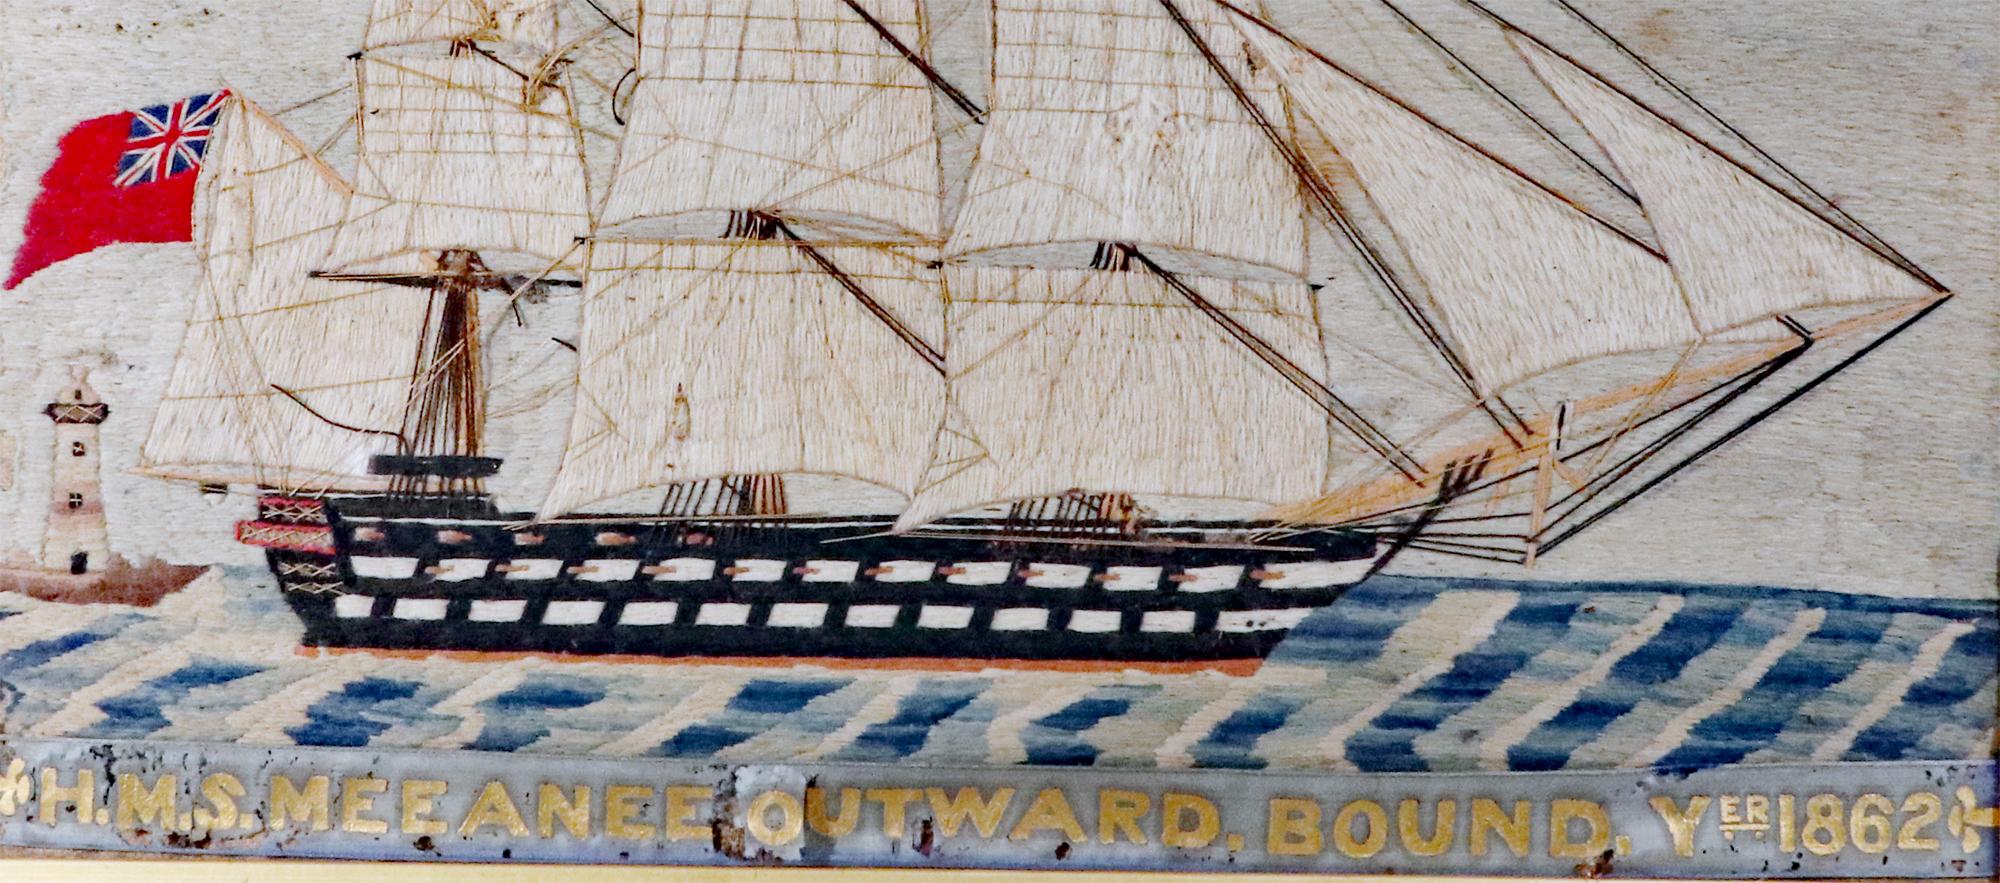 Matrosenwolle der H.M.S. Meeanee Outward Bound, Jahr 1862.

Die britische Seemannsarbeit zeigt eine Steuerbordansicht der H.M.S. Meeanee, die einen Leuchtturm passiert, während sie einen unbekannten Hafen verlässt und auf einem wellenförmigen Meer